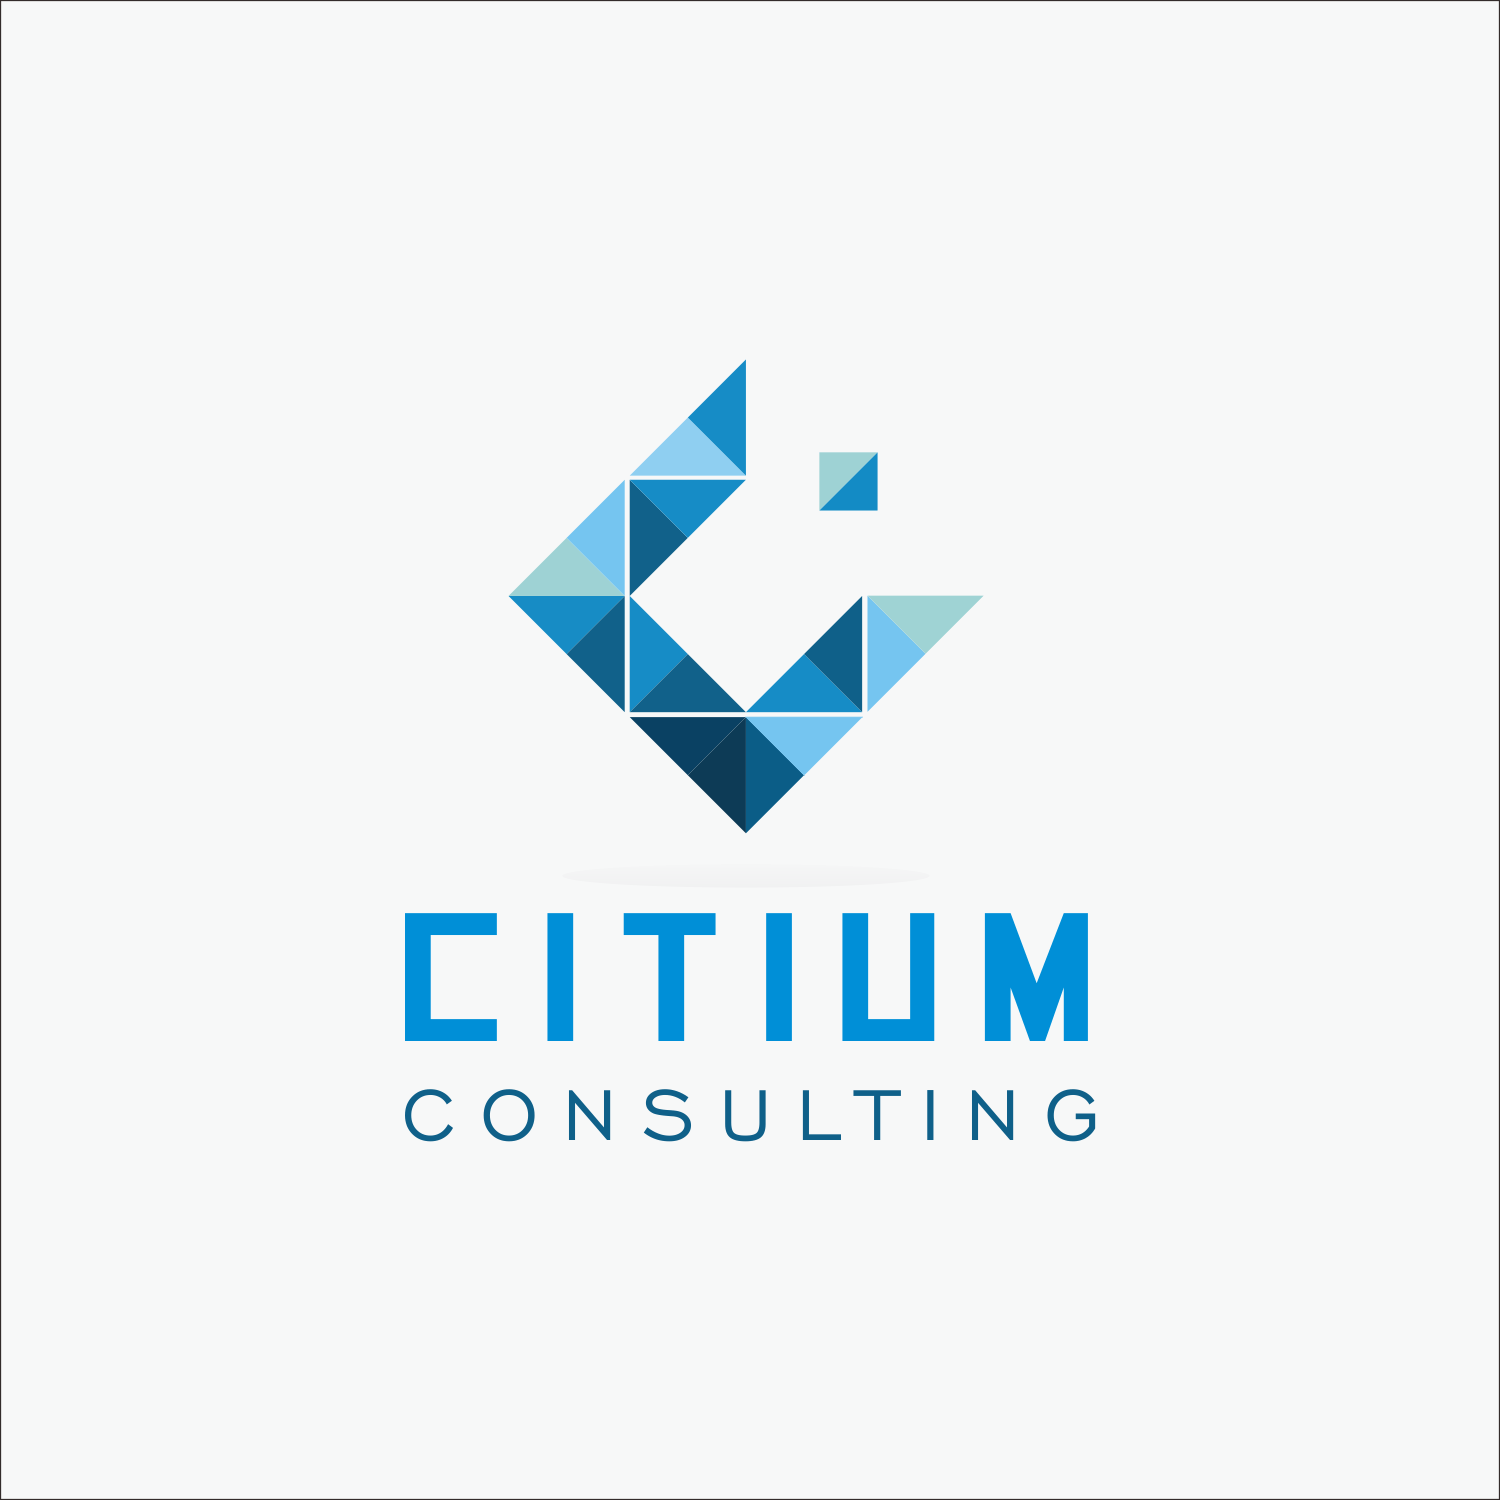 Consultant Logo - Modern, Professional, Business Consultant Logo Design for Citium ...